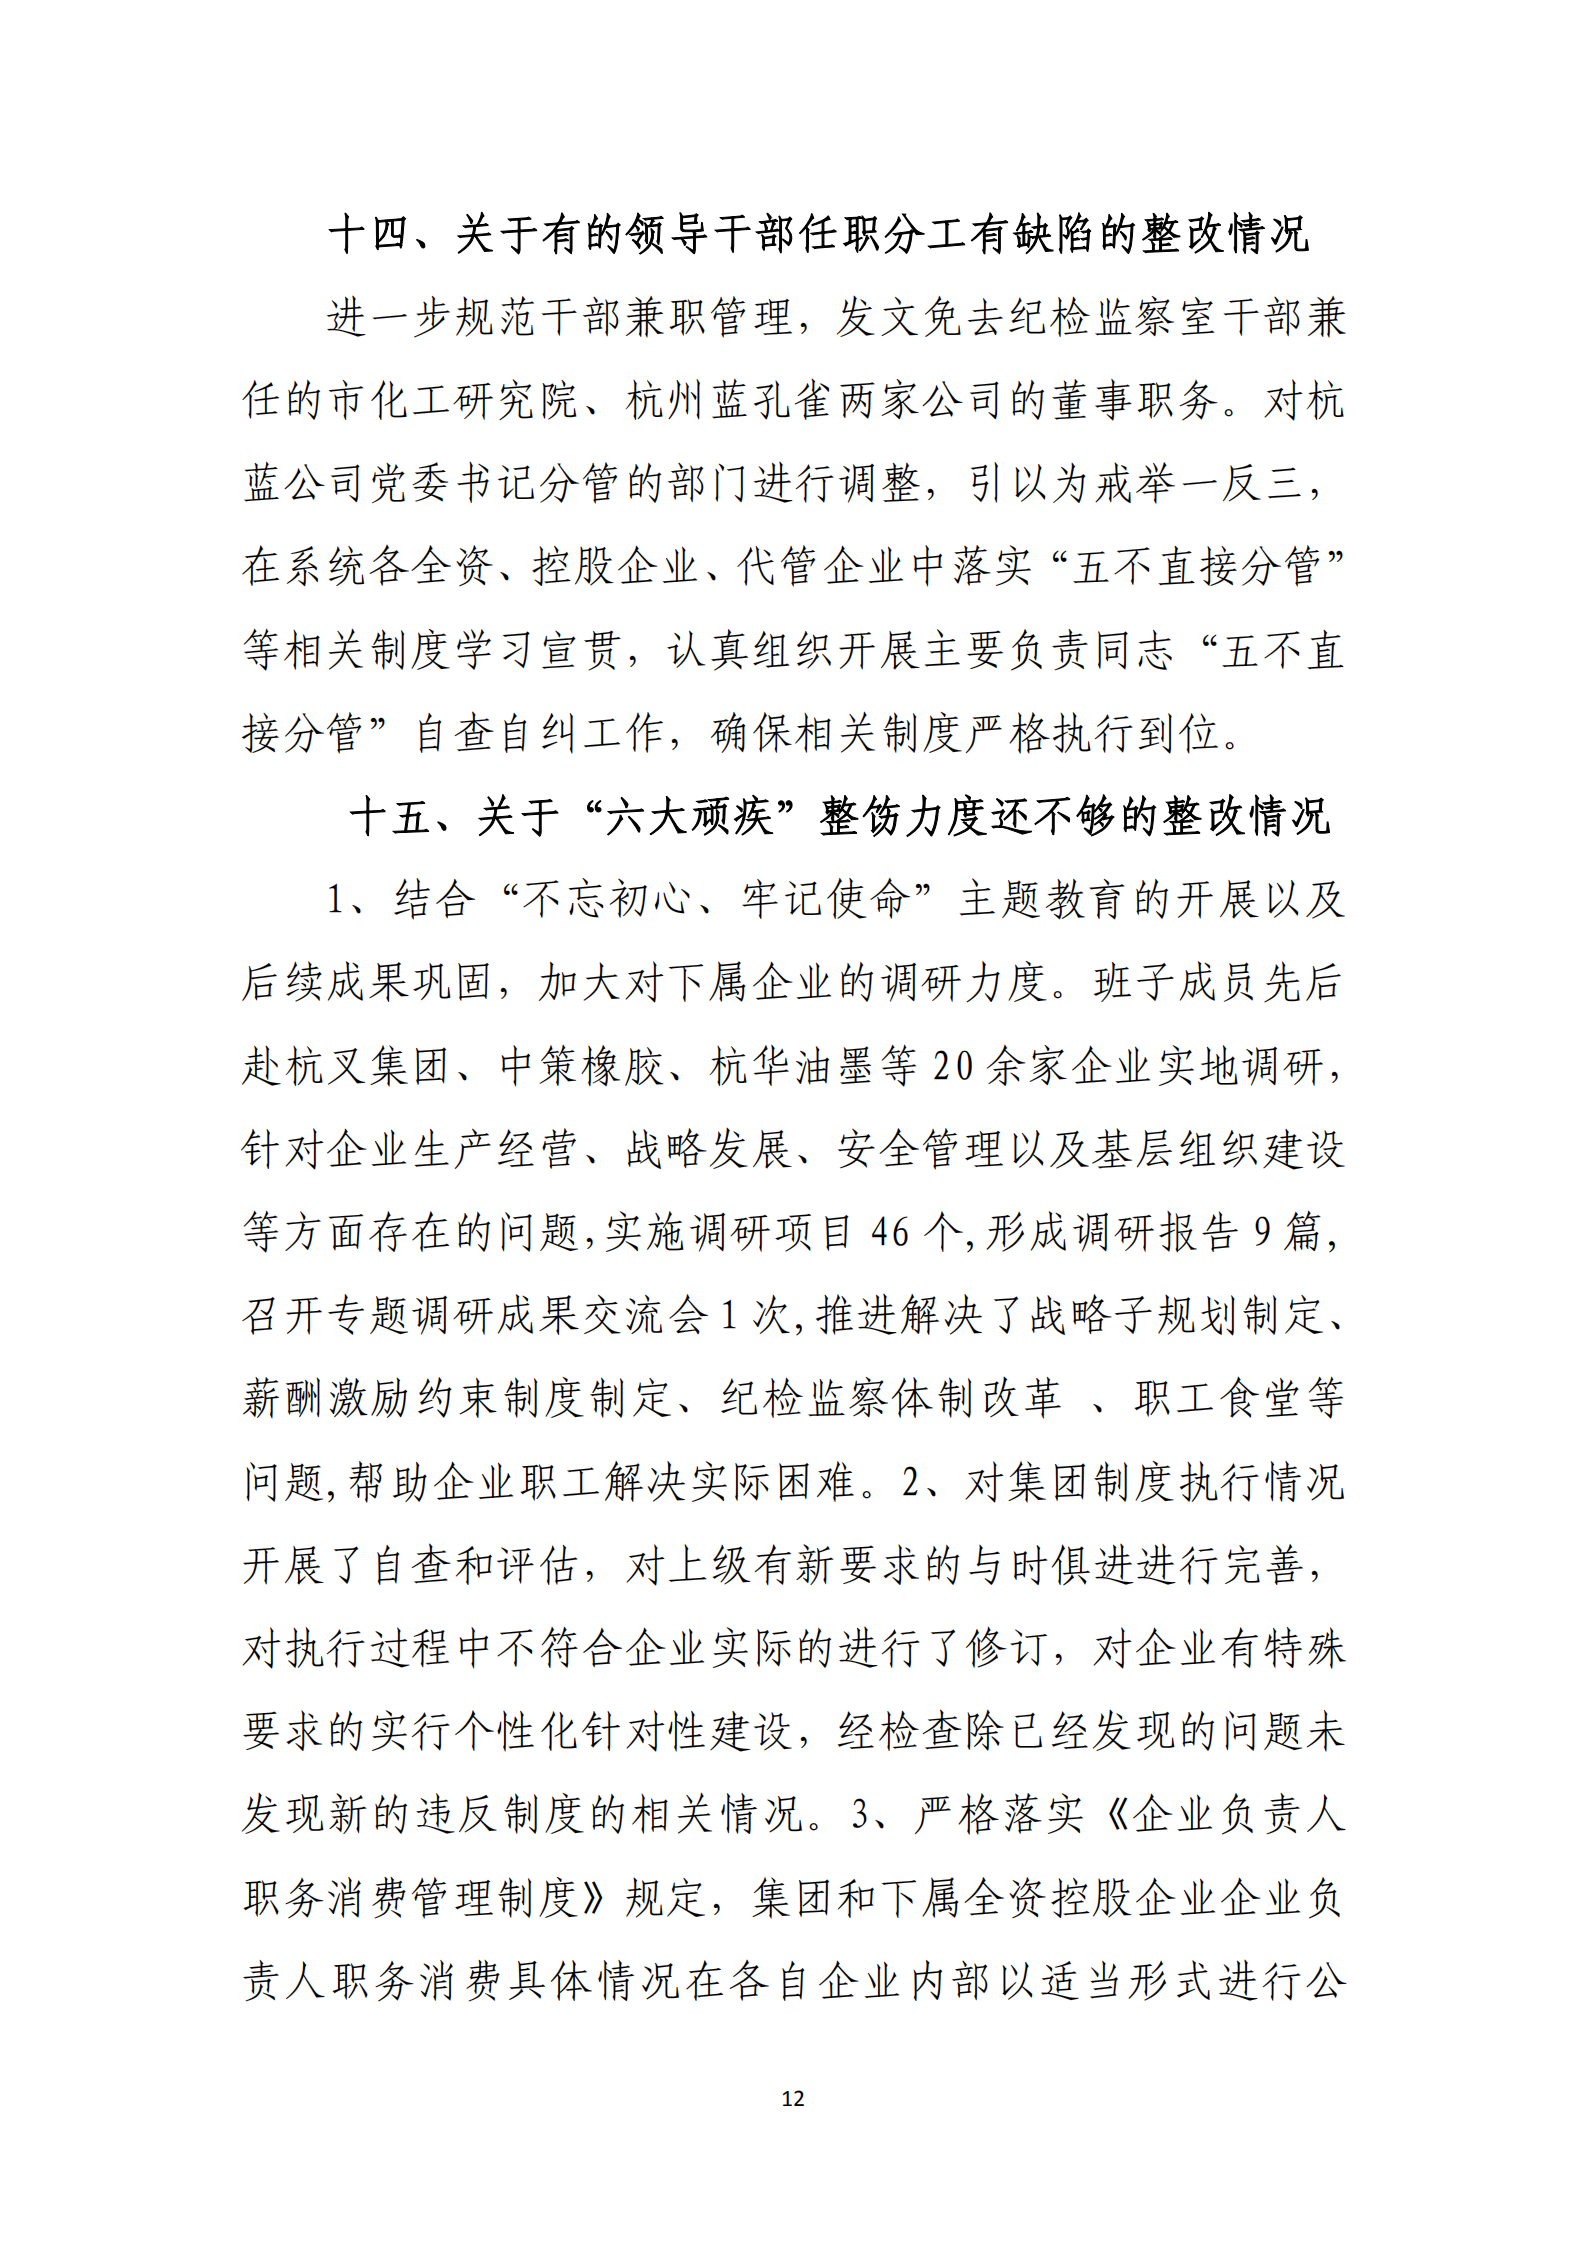 乐虎国际游戏官网党委关于巡察整改情况的通报_11.png